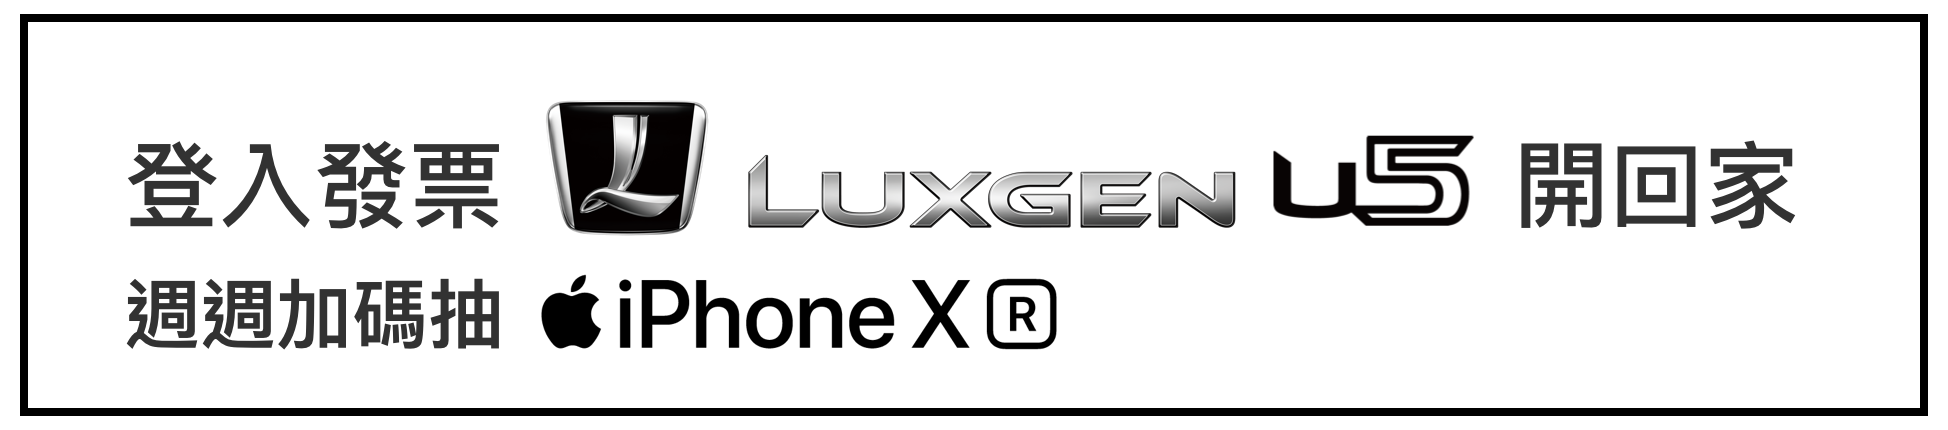 登入發票 Luxgen U5開回家 週週加碼抽 iPhoneX